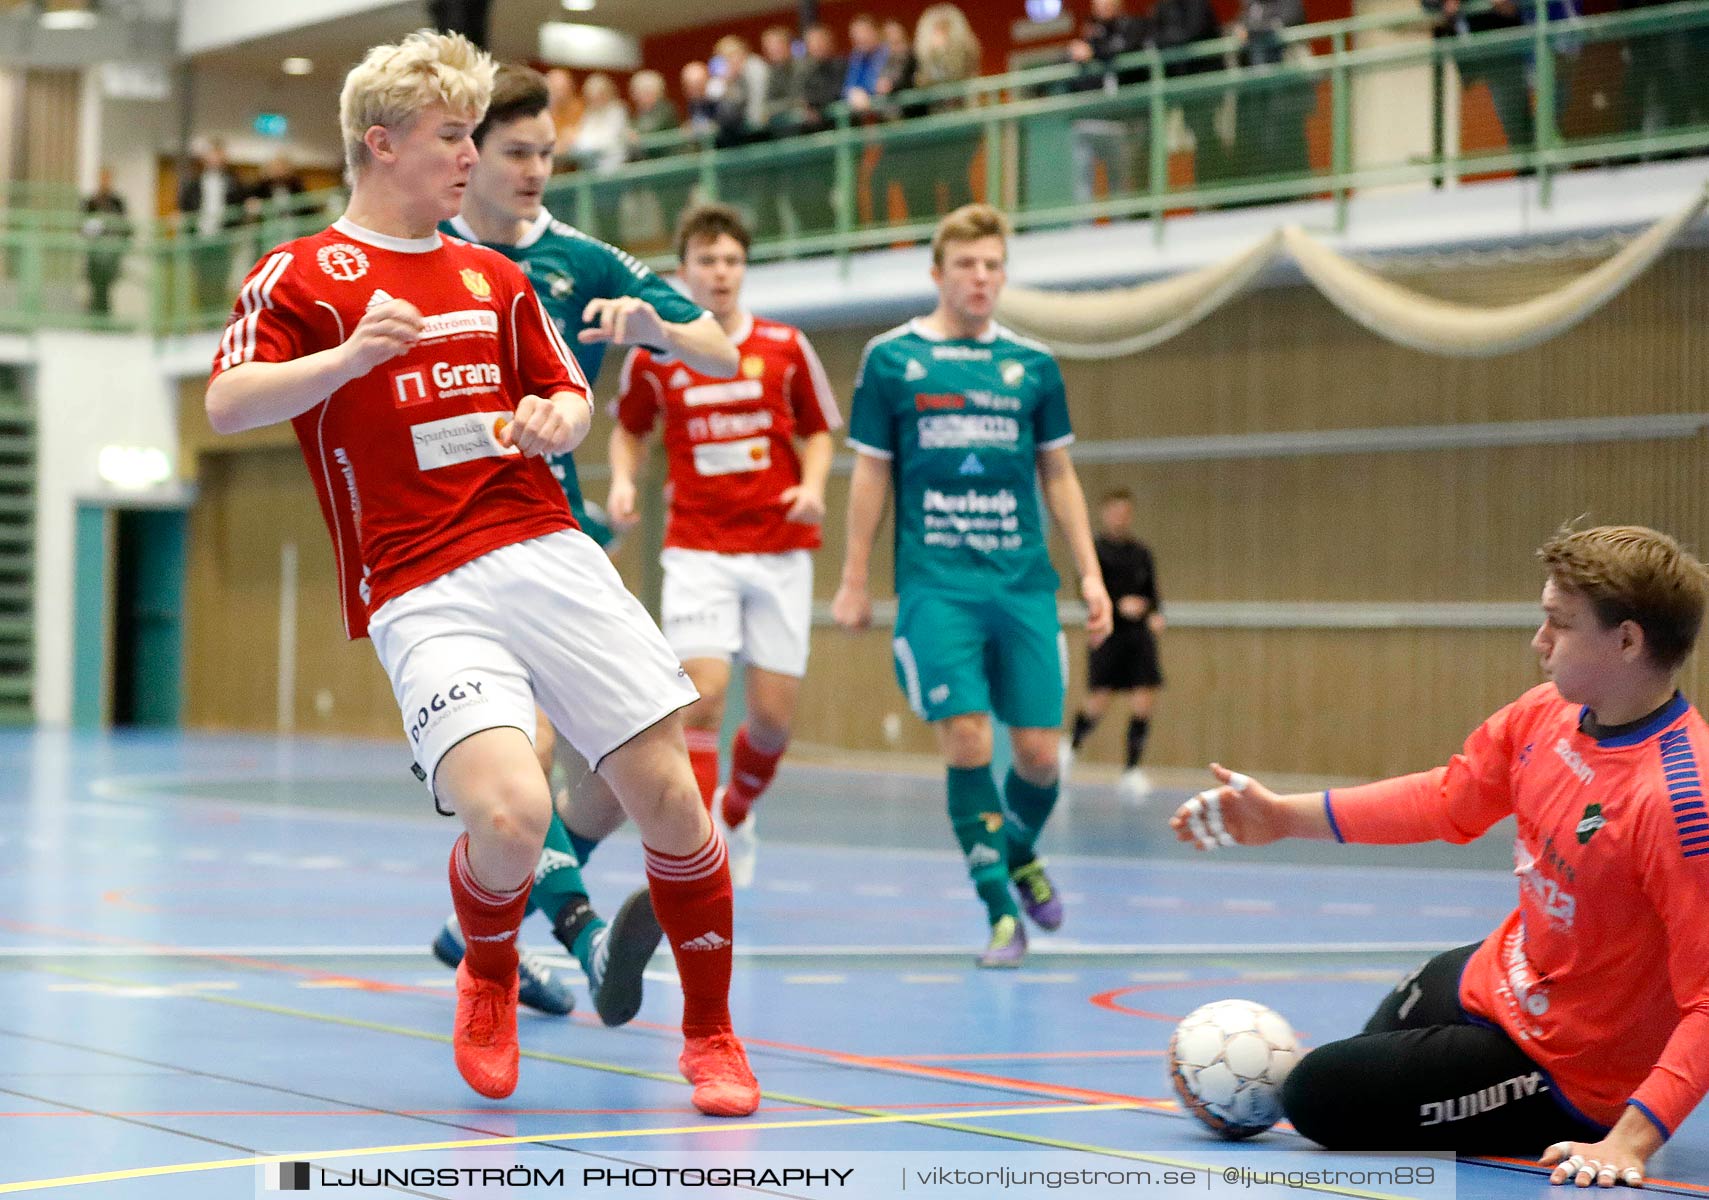 Skövde Futsalcup 2019 Herrar Vårgårda IK-Våmbs IF,herr,Arena Skövde,Skövde,Sverige,Futsal,,2019,227260